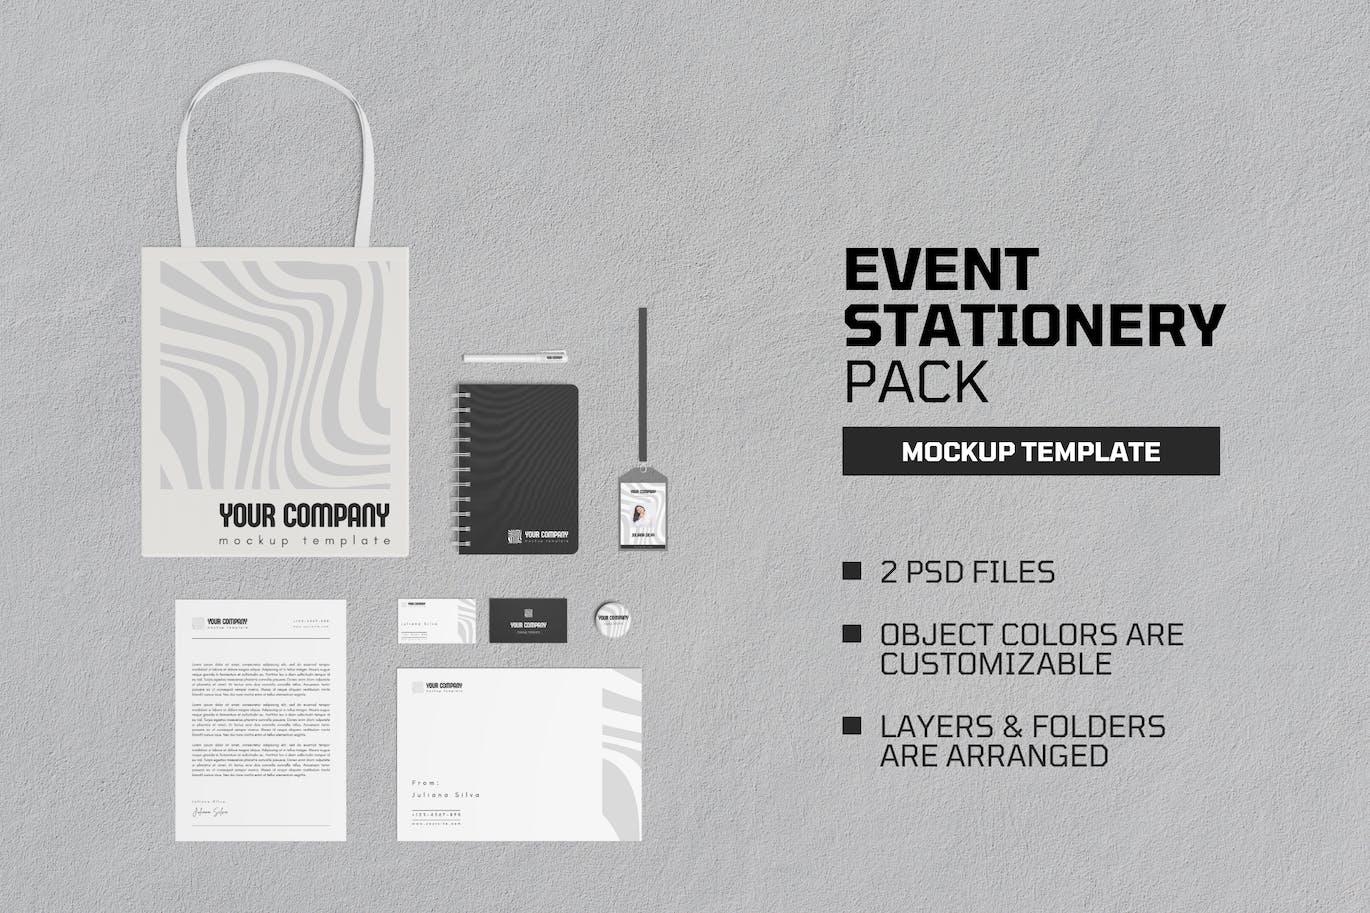 活动文具套装品牌展示样机图 Event Stationery Pack Mockup 样机素材 第1张